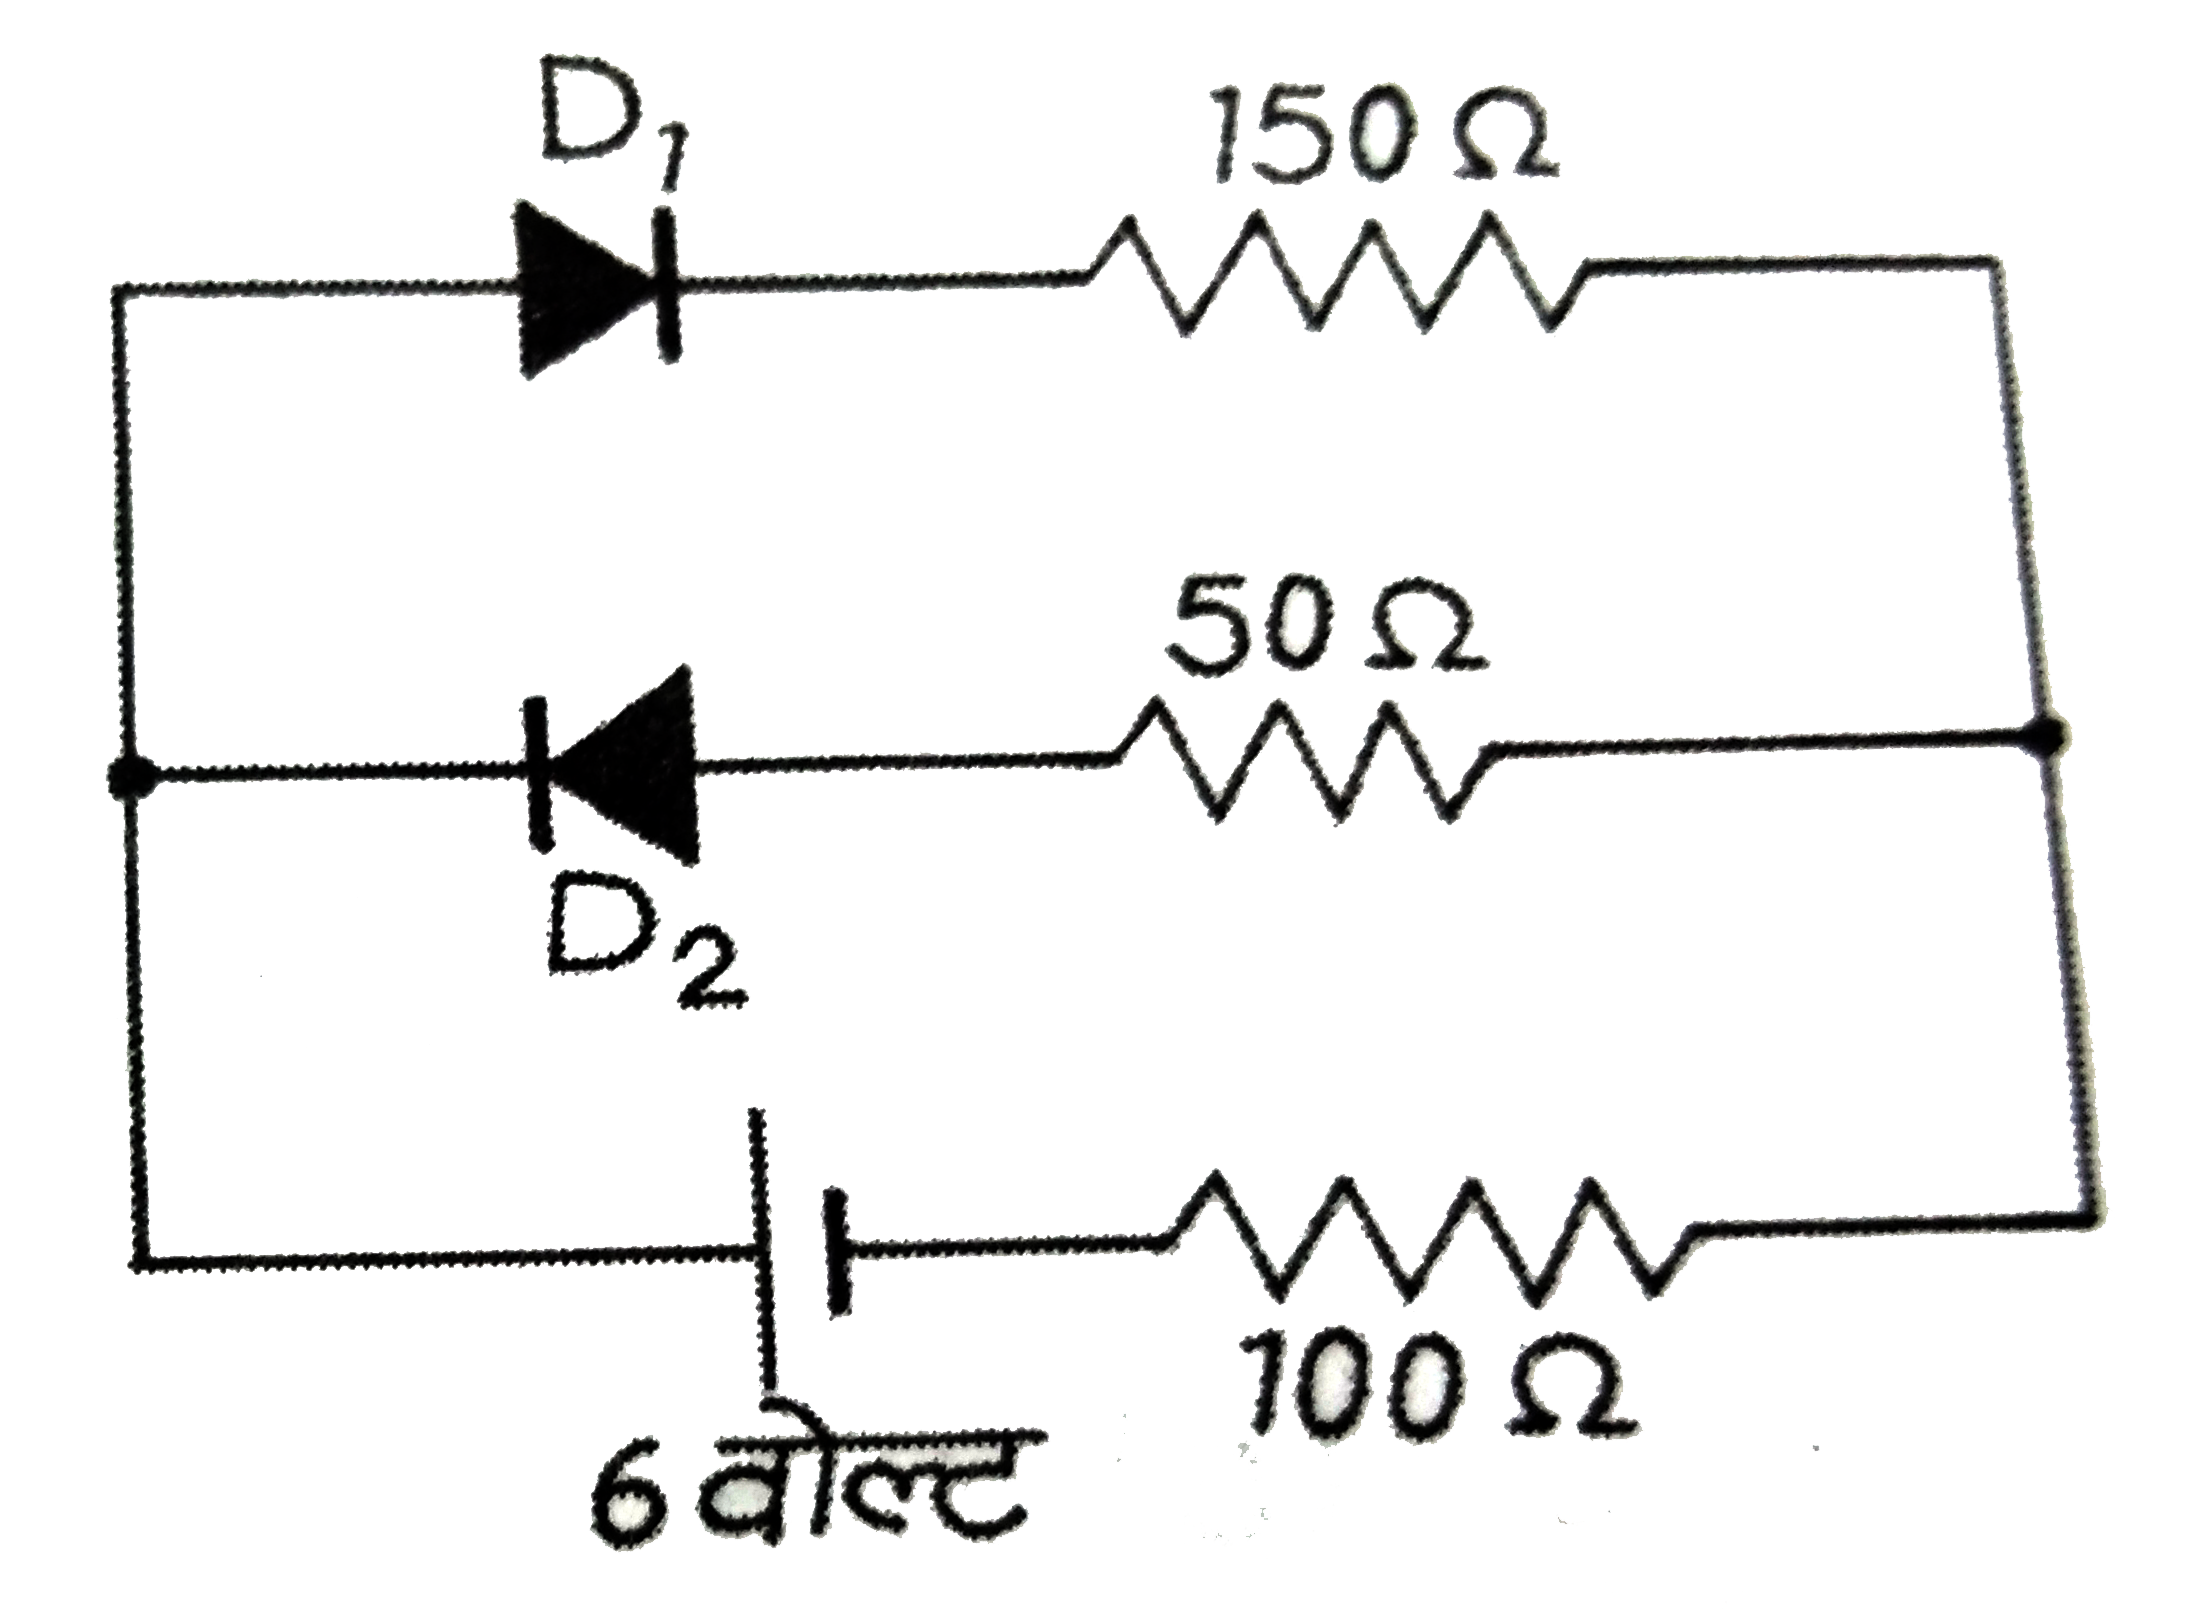 संलग्न चित्र में दिखाये गये परिपथ में दोनों डायोडों में प्रत्येक का अग्र प्रतिरोध 50 Omega  है तथा पश्च प्रतिरोध अनन्त है। यदि बैटरी का वोल्टेज 6 V है, तो 100 Omega  प्रतिरोध में धारा ( ऐम्पियर में ) है :